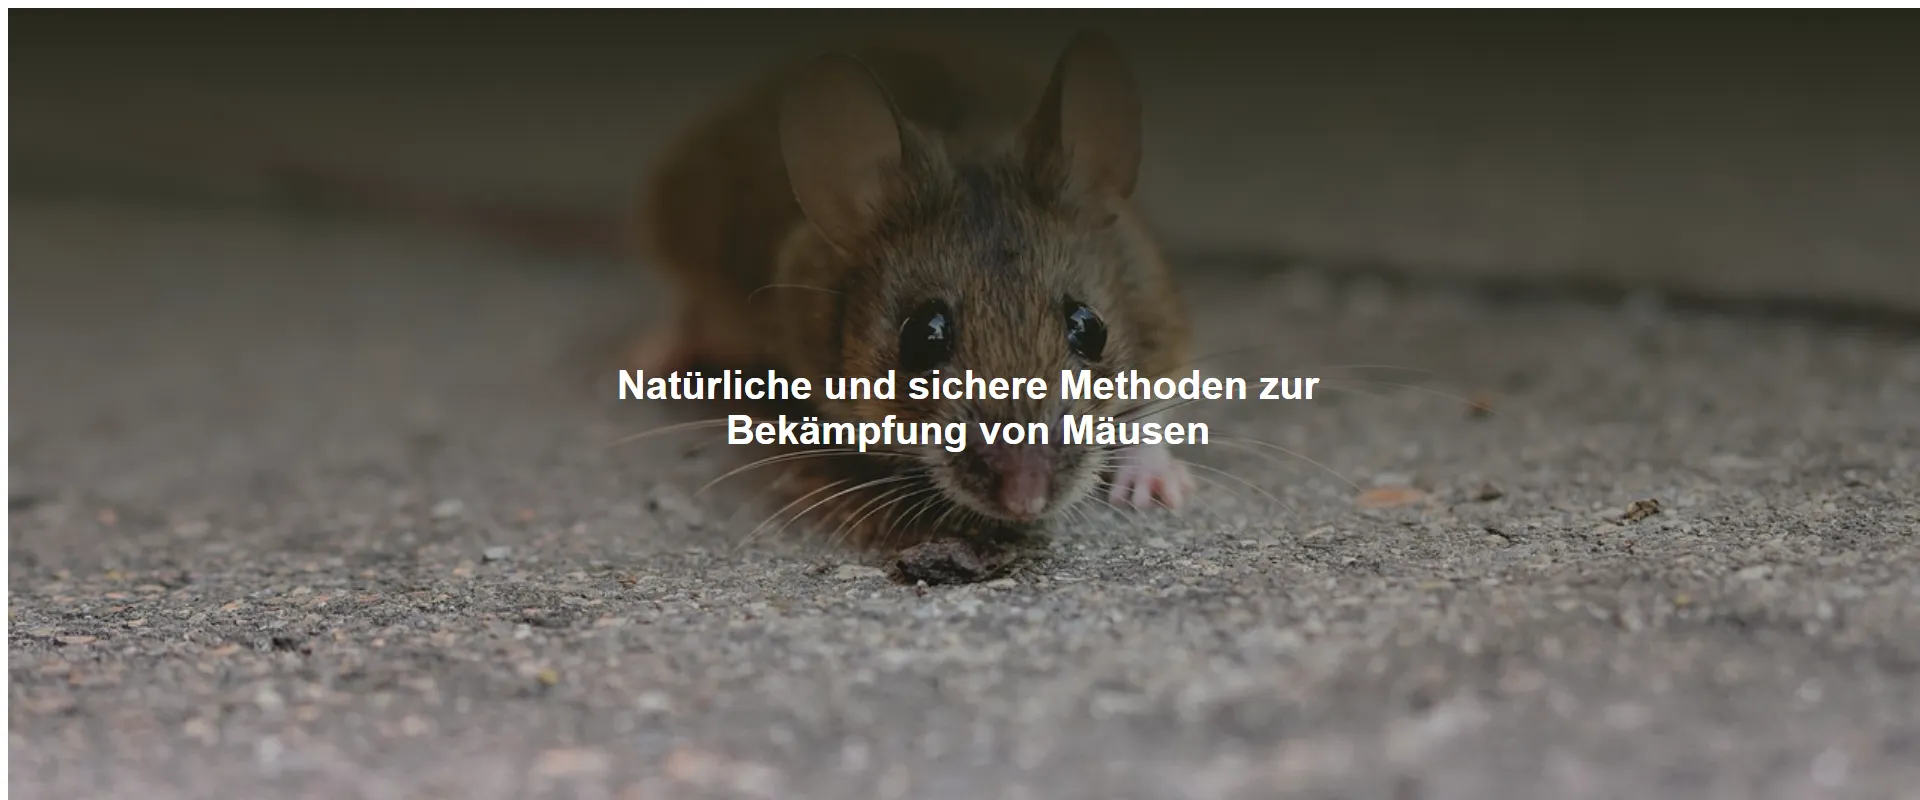 Natürliche und sichere Methoden zur Bekämpfung von Mäusen